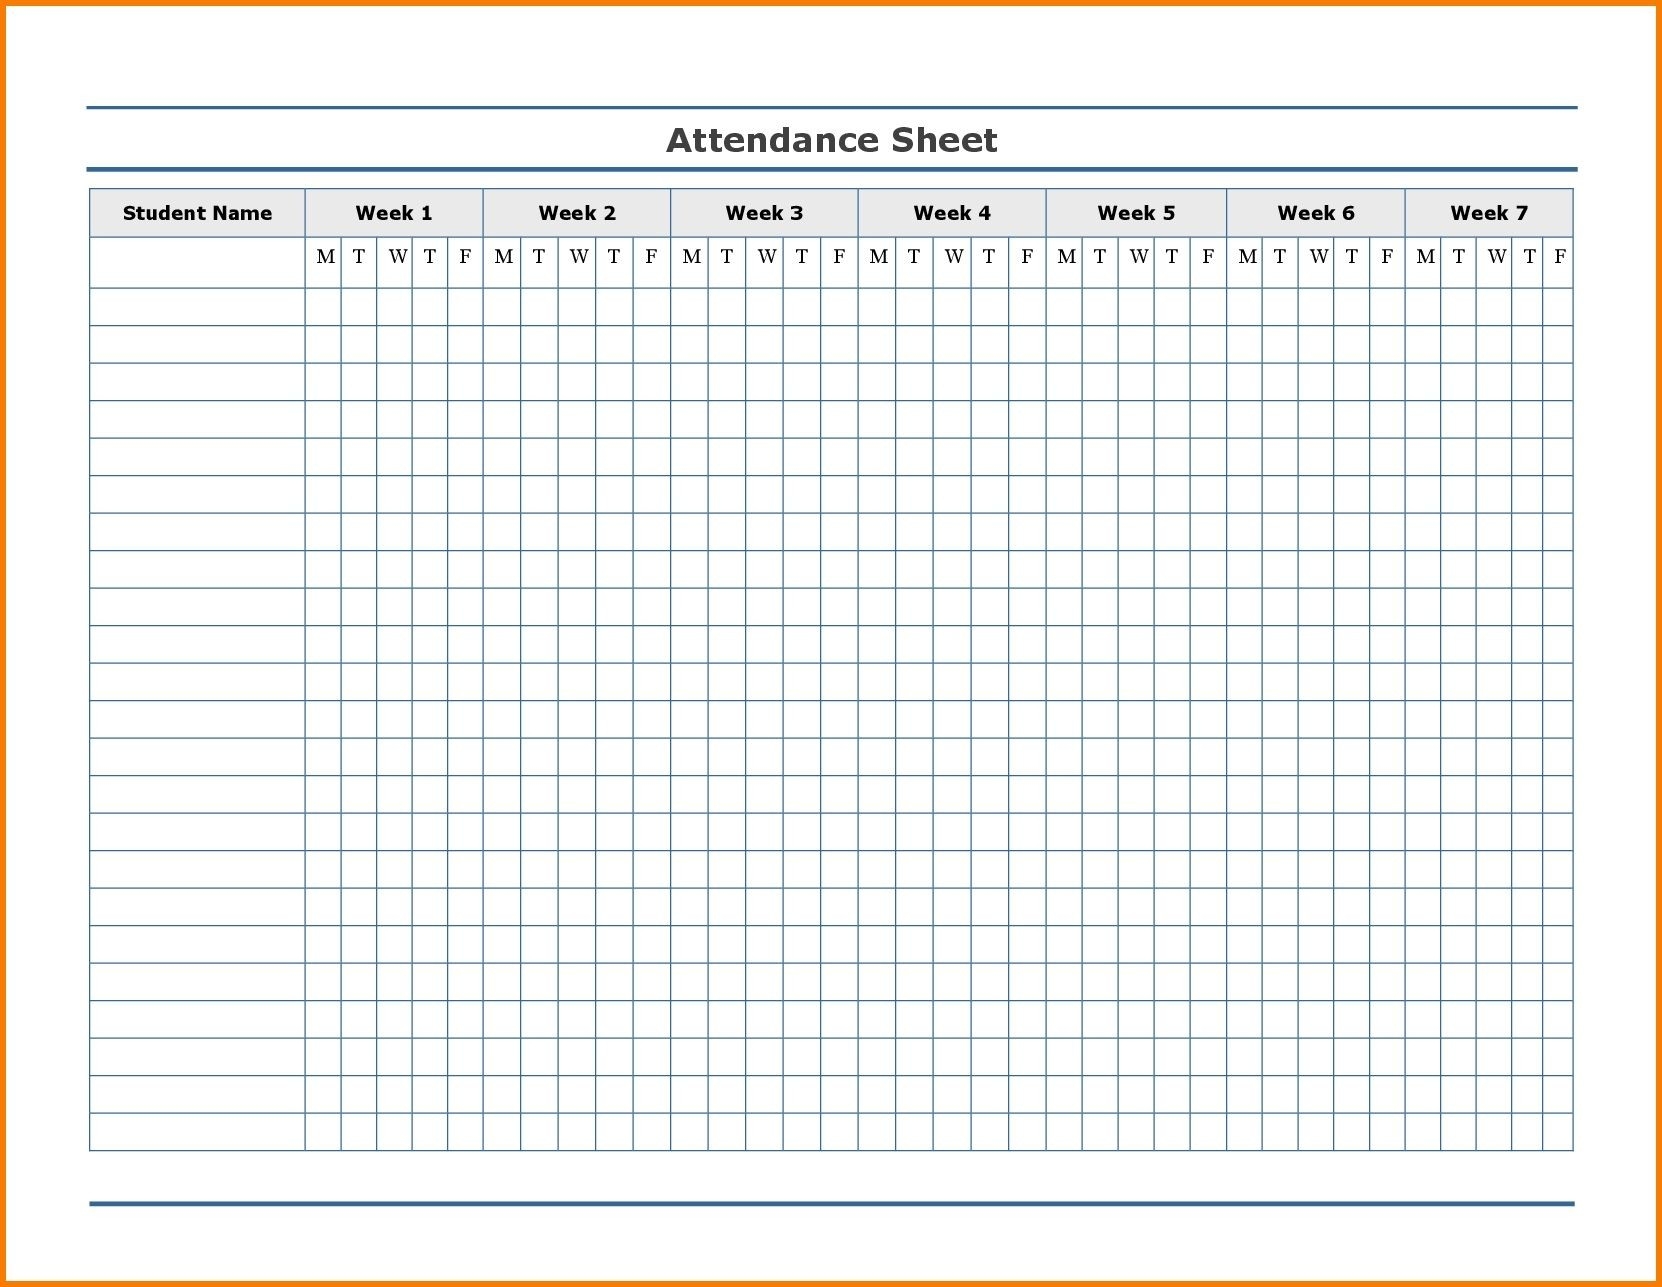 Free Employee Attendance Calendar | Employee Tracker  Attendance Tracking Calendar 2020